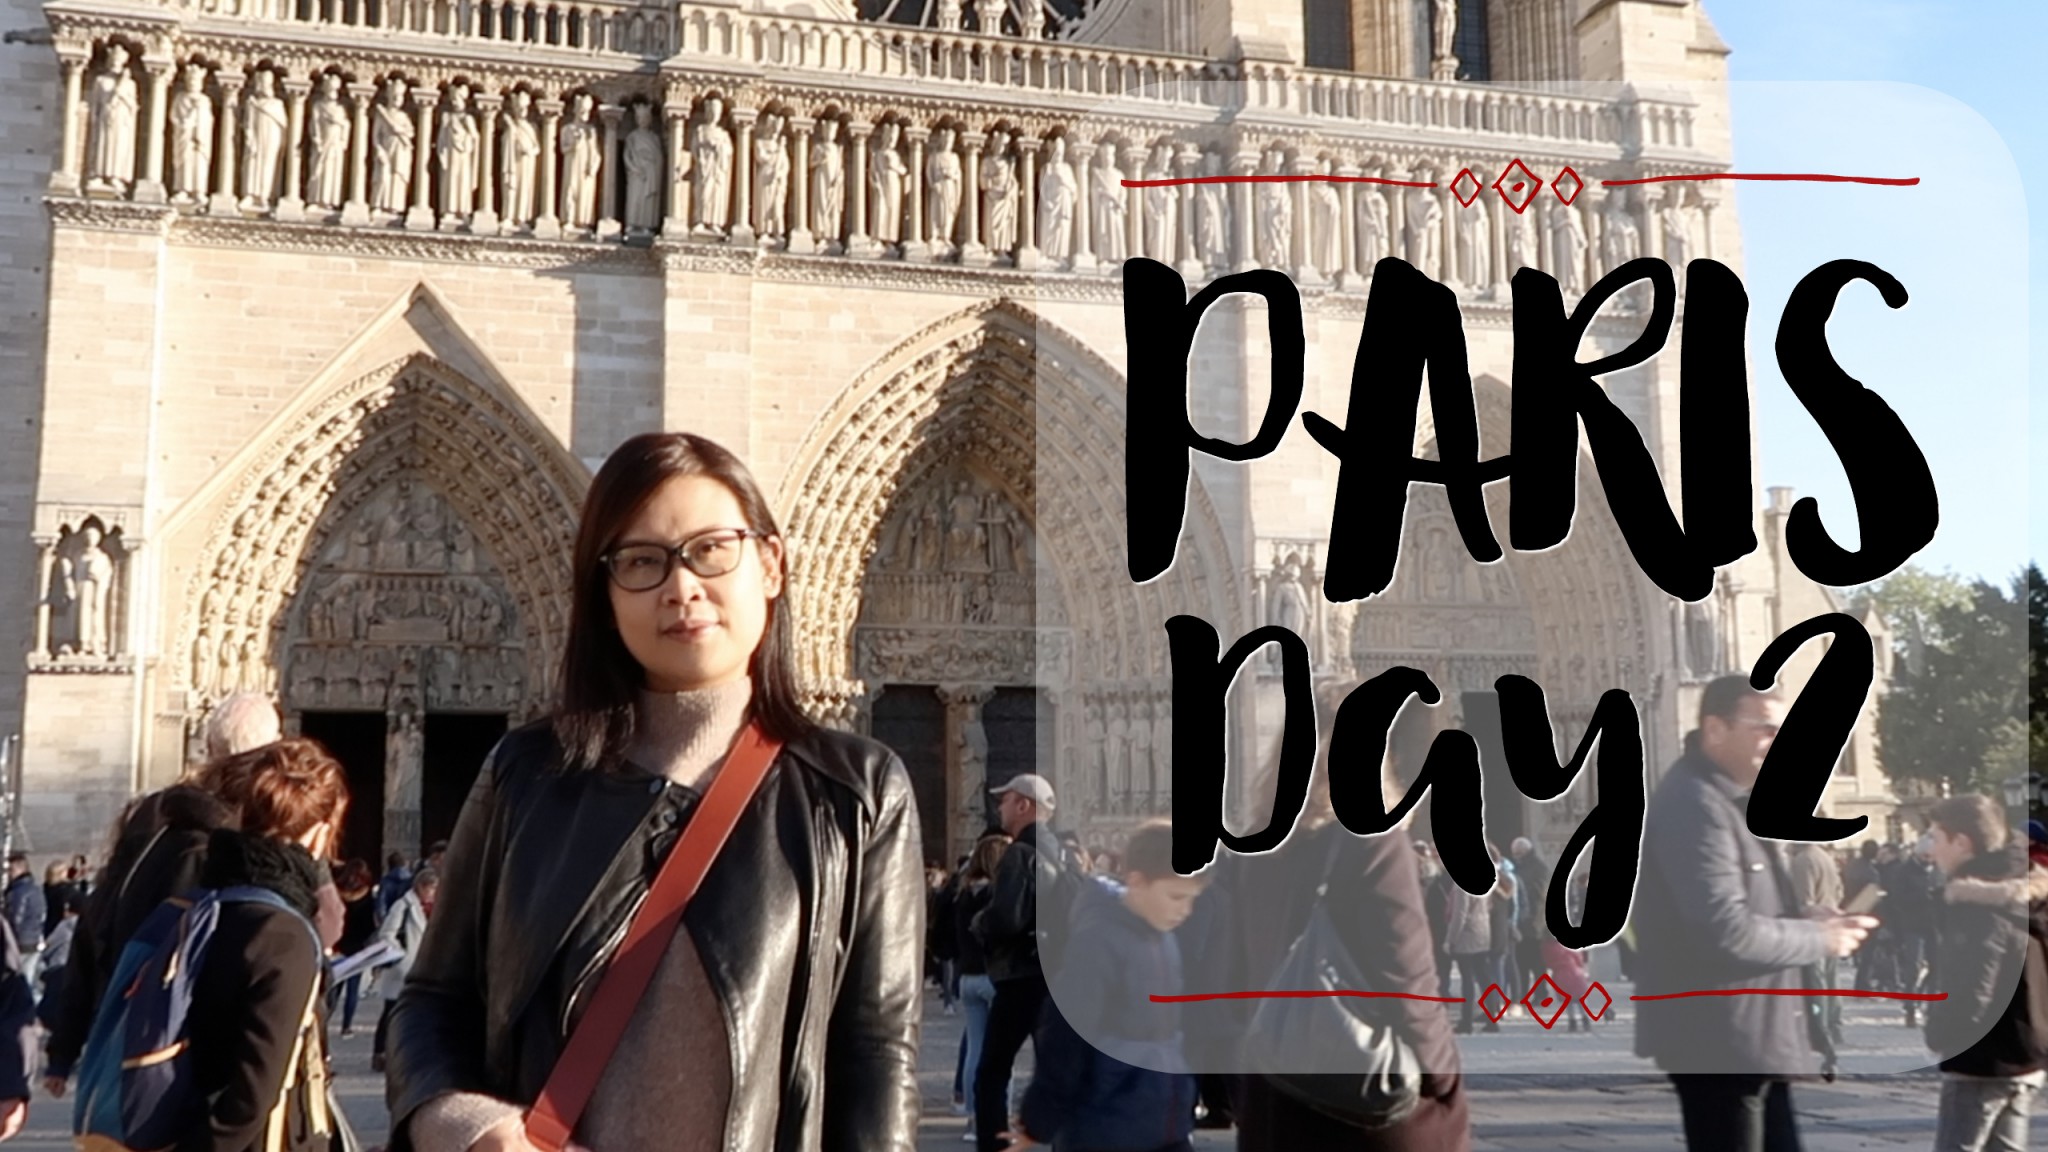 漫遊巴黎 + 巴黎聖母院Notre-Dame + 自己煮飯 [法國巴黎自由行Day 2] | 黑咪Vlogmas